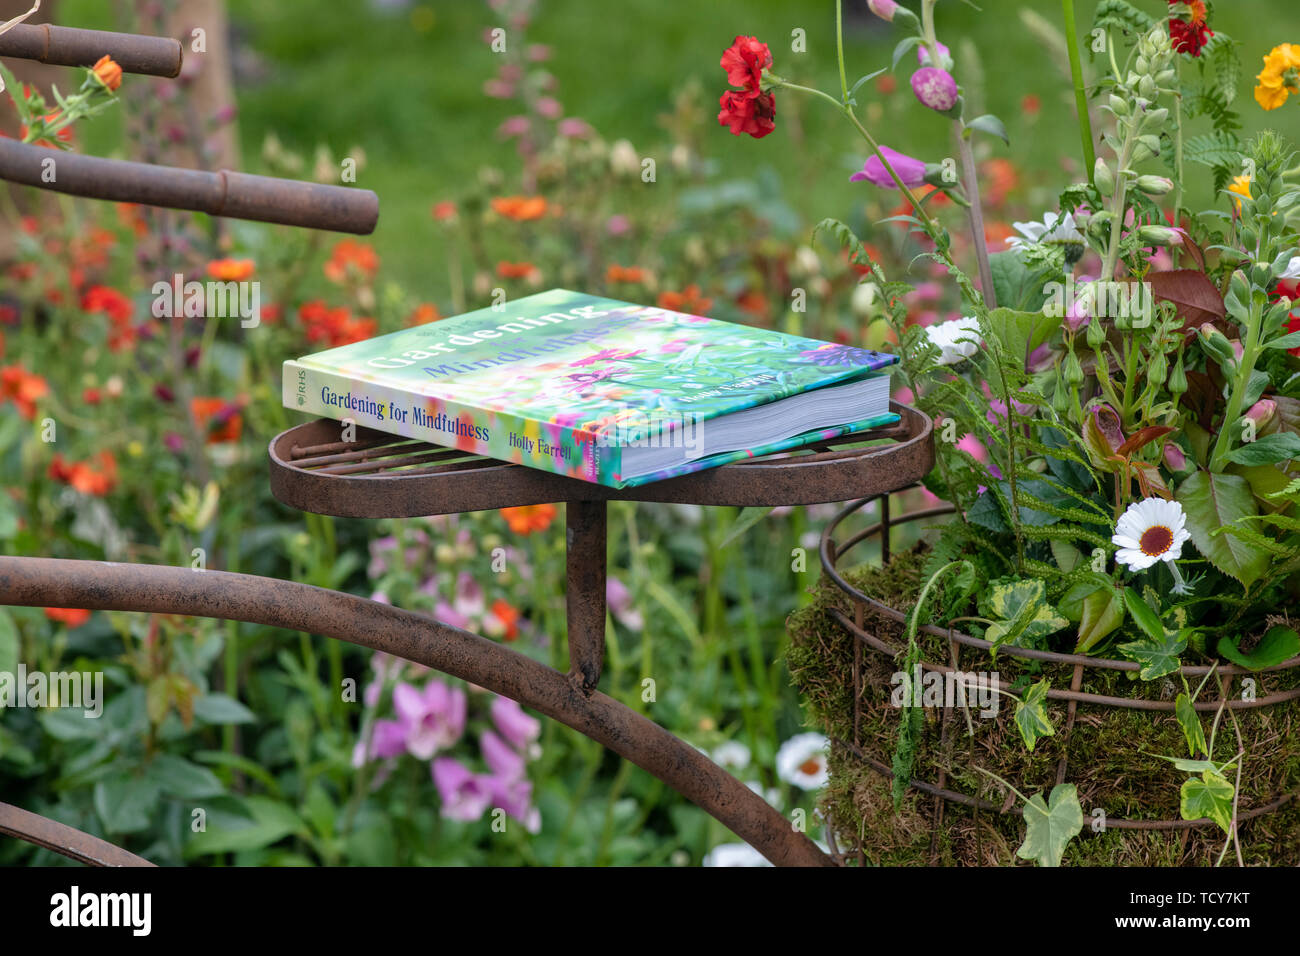 Jardinería para mindfulness libro sobre un vivero mostrar en RHS Chatsworth Flower Show 2019. Chatsworth, Derbyshire, Reino Unido Foto de stock